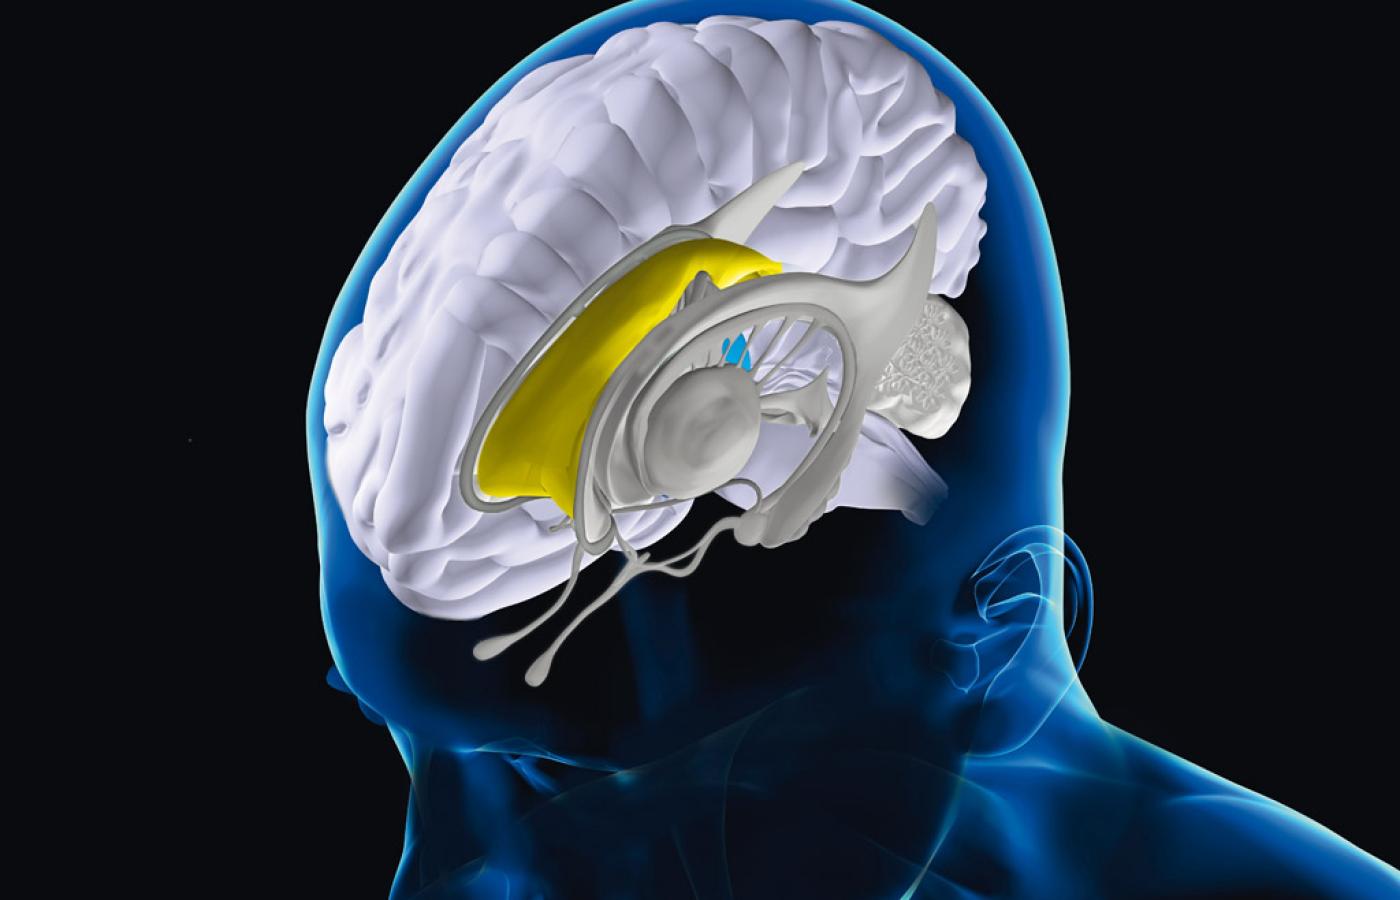 Obie półkule mózgu (tu widoczna prawa) łączy spoidło wielkie (zaznaczone kolorem żółtym), działające jak wielka infostrada.